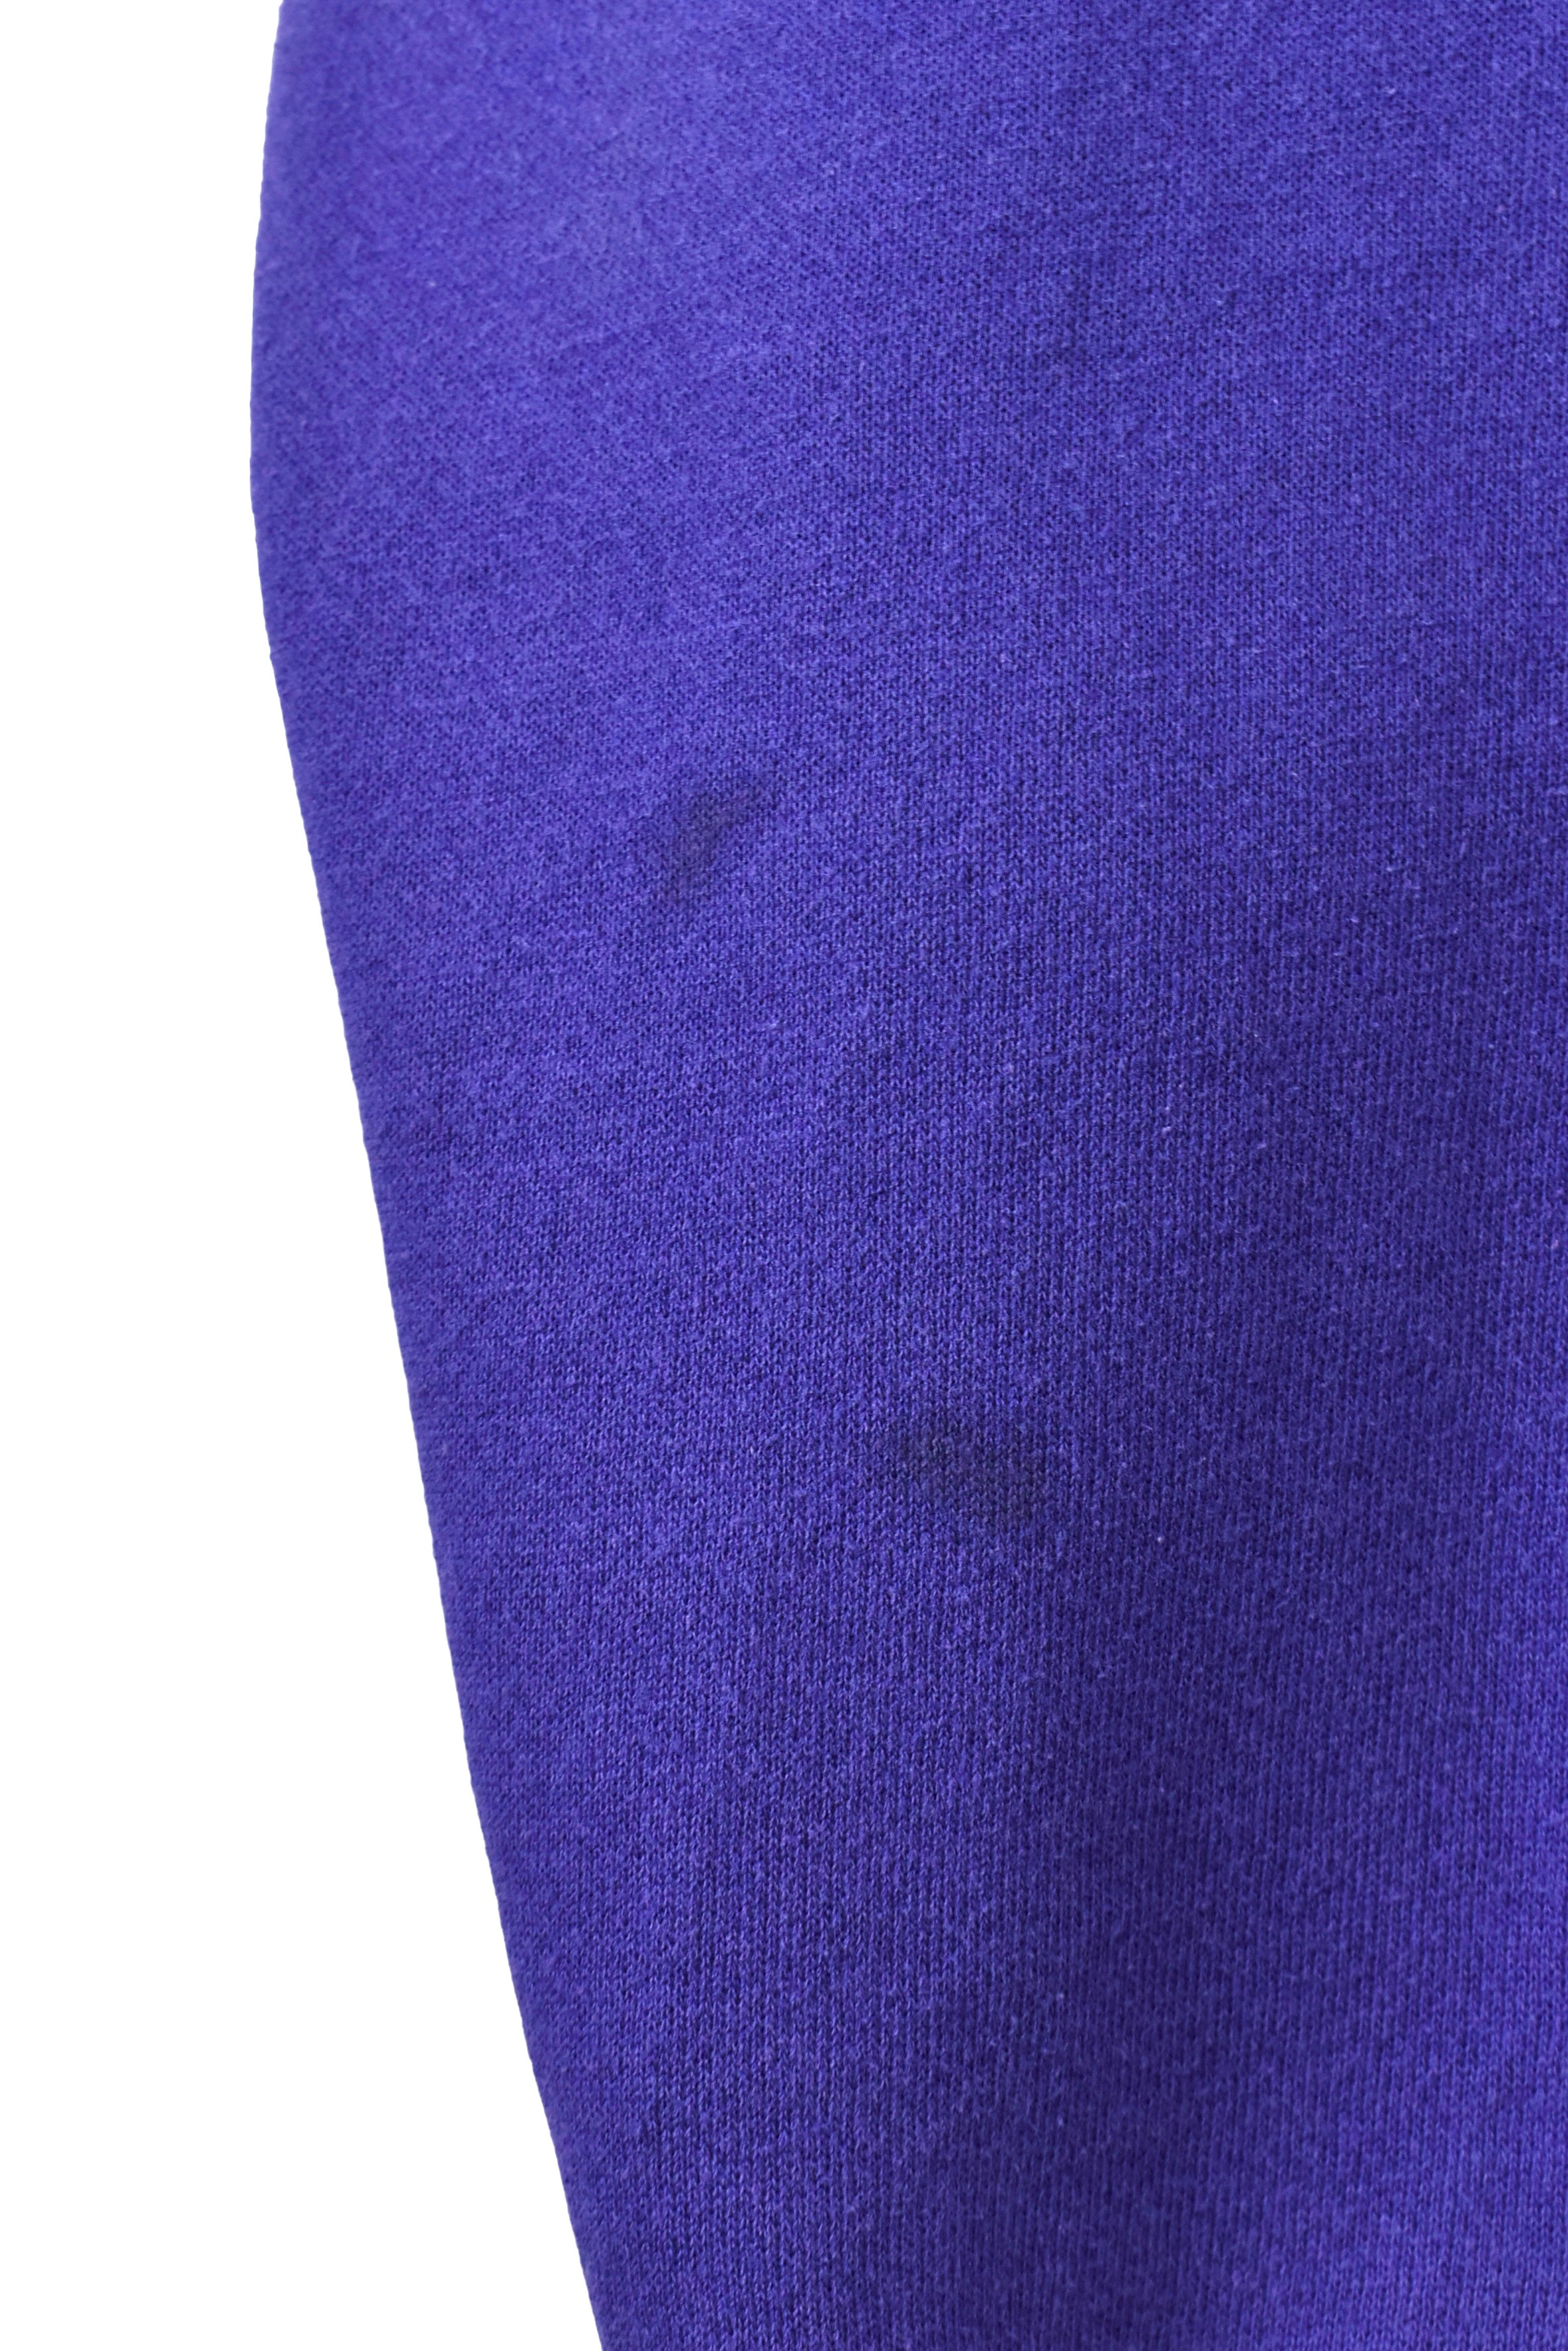 Vintage Minnesota Vikings hoodie, purple NFL embroidered sweatshirt - Large